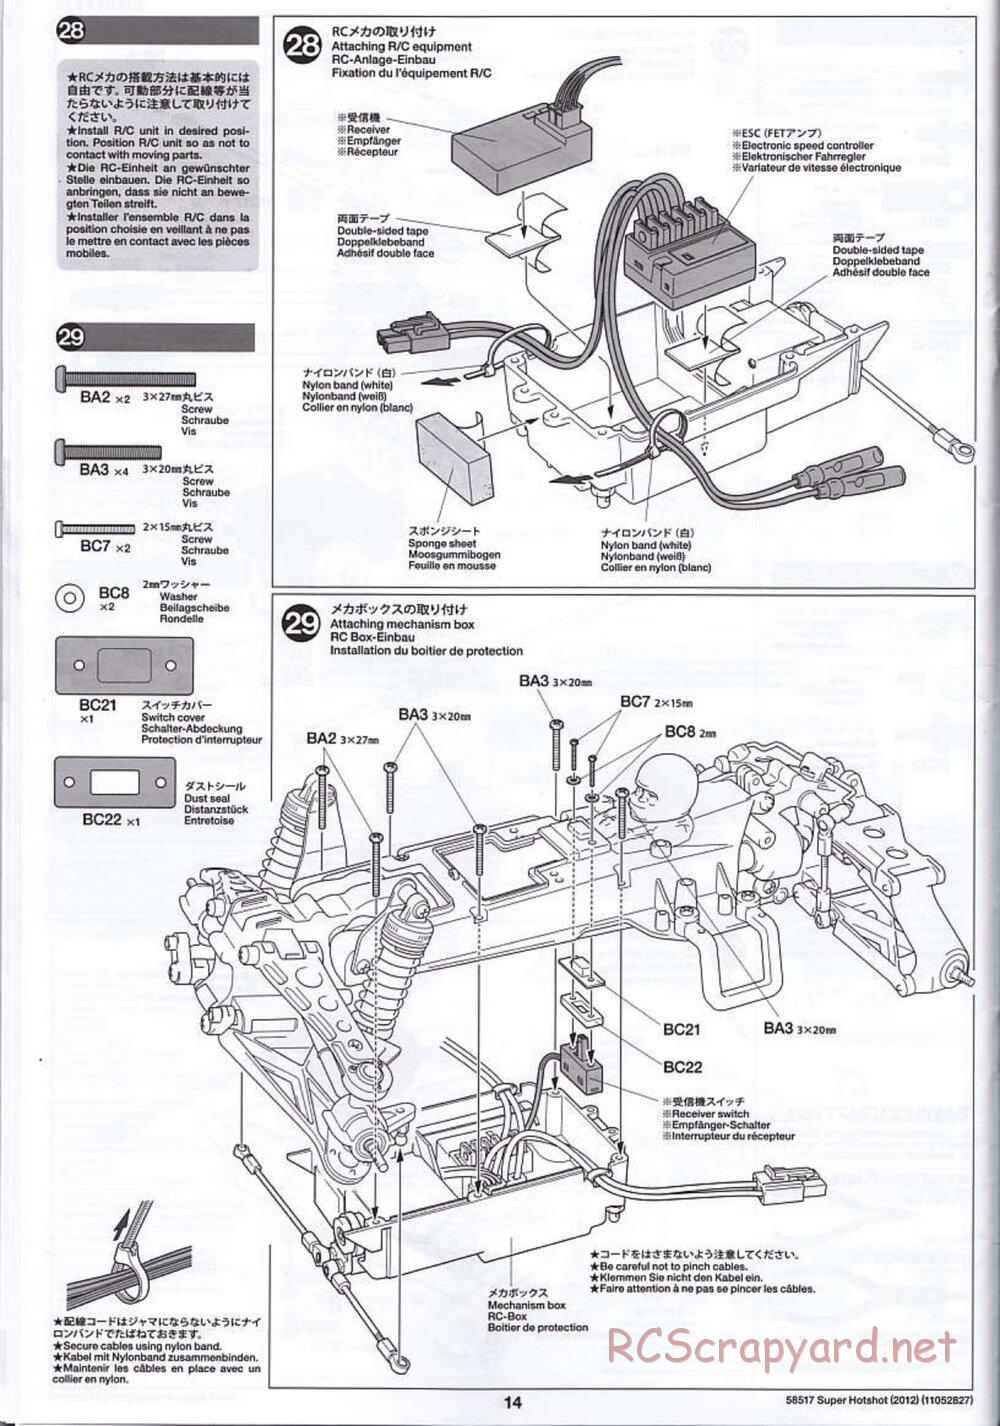 Tamiya - Super Hotshot 2012 - HS Chassis - Manual - Page 14